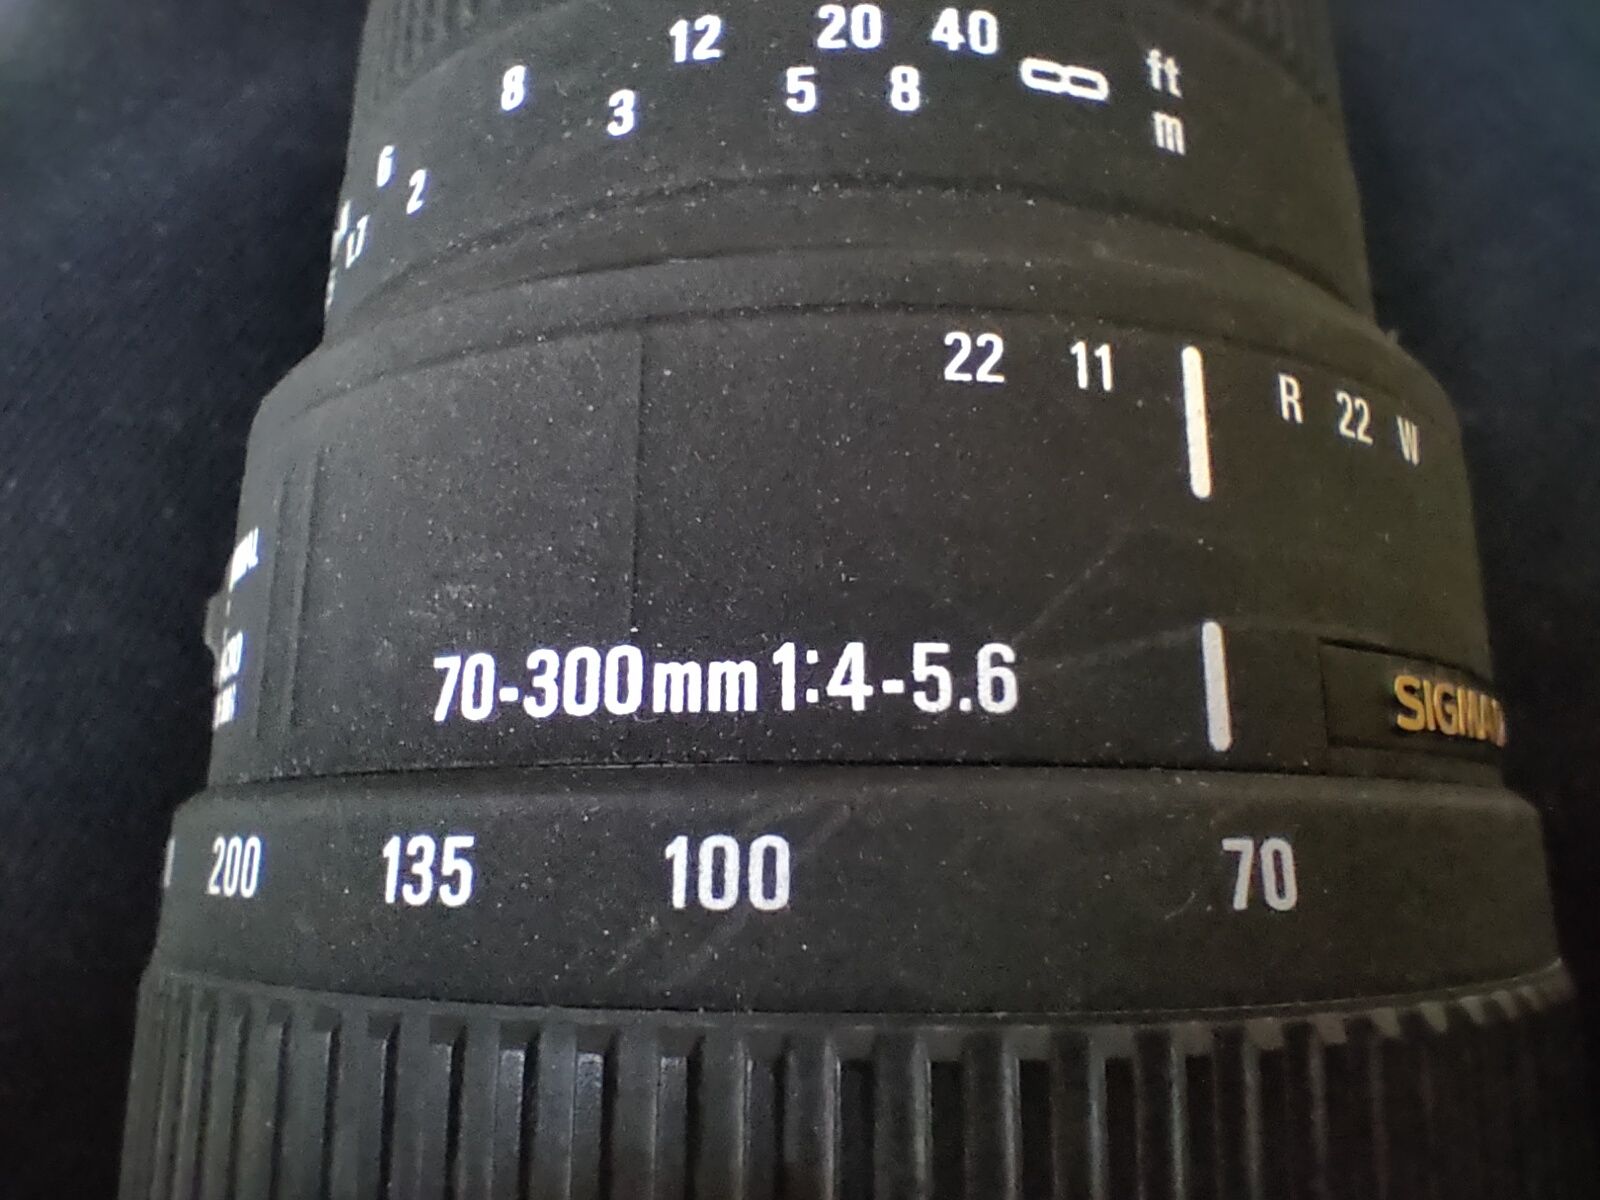 Nikon d90 + nikkor 18-105 + sigma 70-300 +filtry